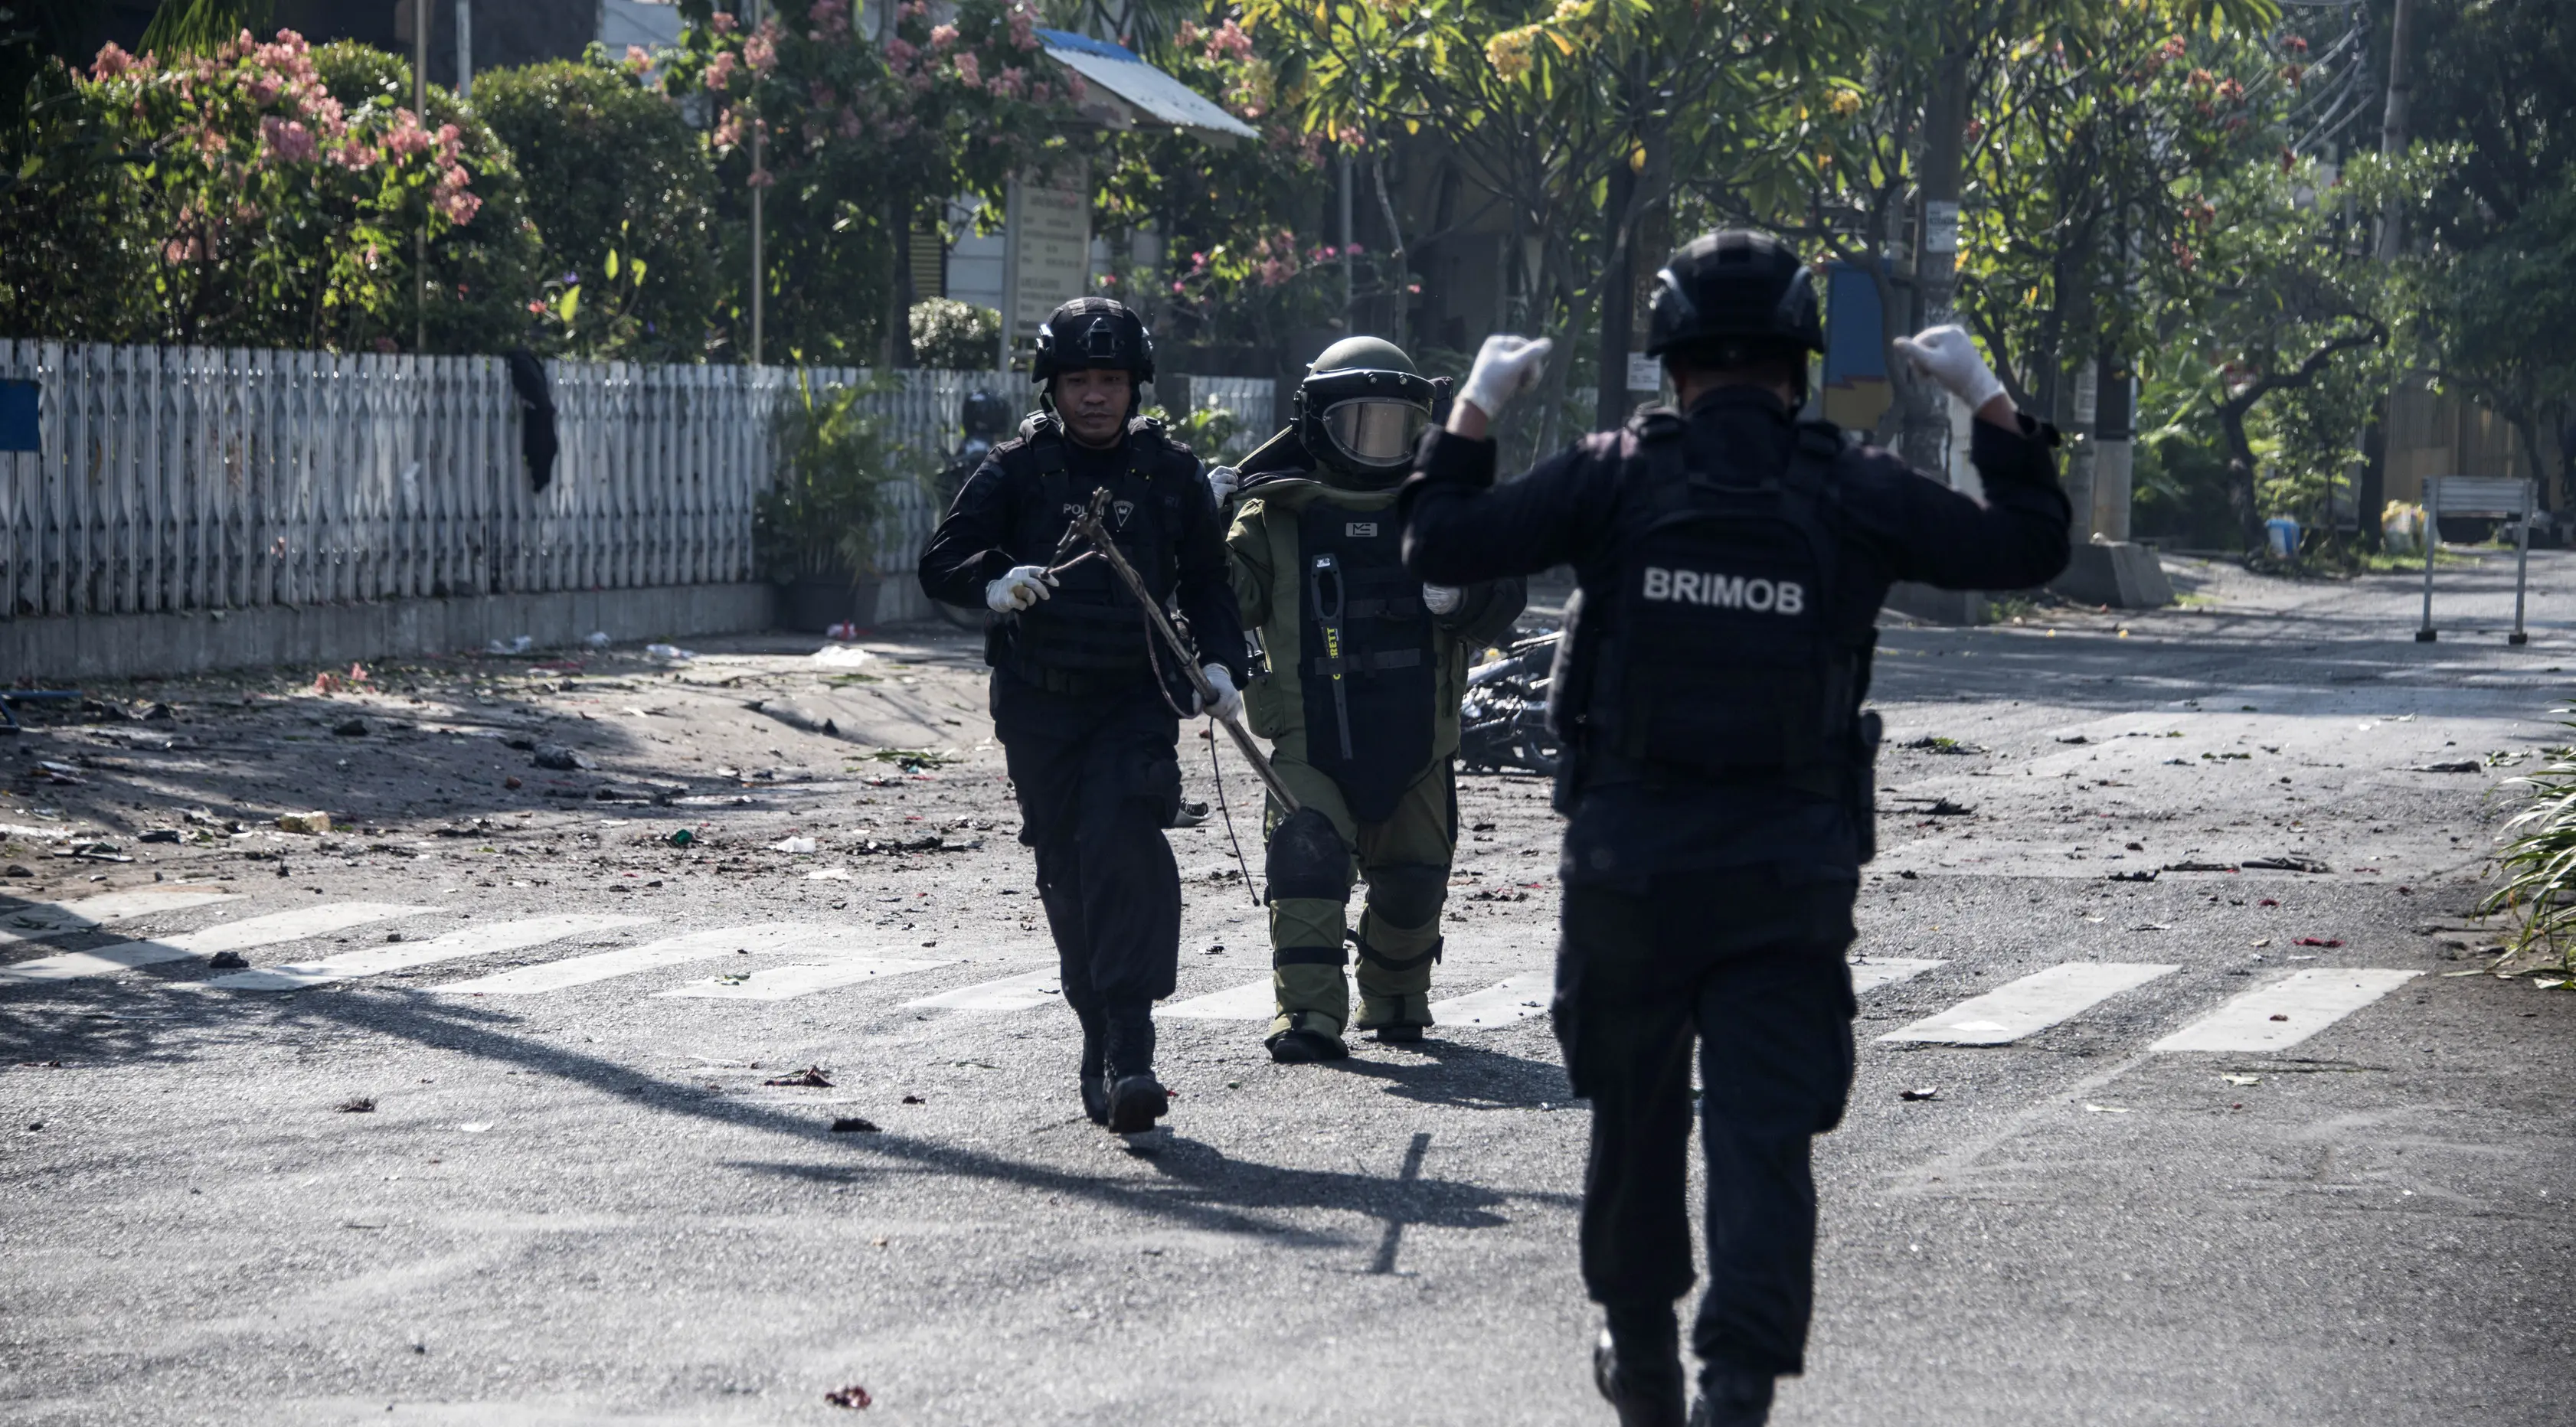 Tim gegana Brimob Jawa Timur melakukan penyisiran di sekitar gereja di Surabaya menyusul ledakan bom, Minggu (13/5). Ledakan terjadi di tiga gereja, yakni Santa Maria di Ngagel, GKI di Jalan Diponegoro dan gereja di Jalan Arjuna. (AFP/JUNI KRISWANTO)